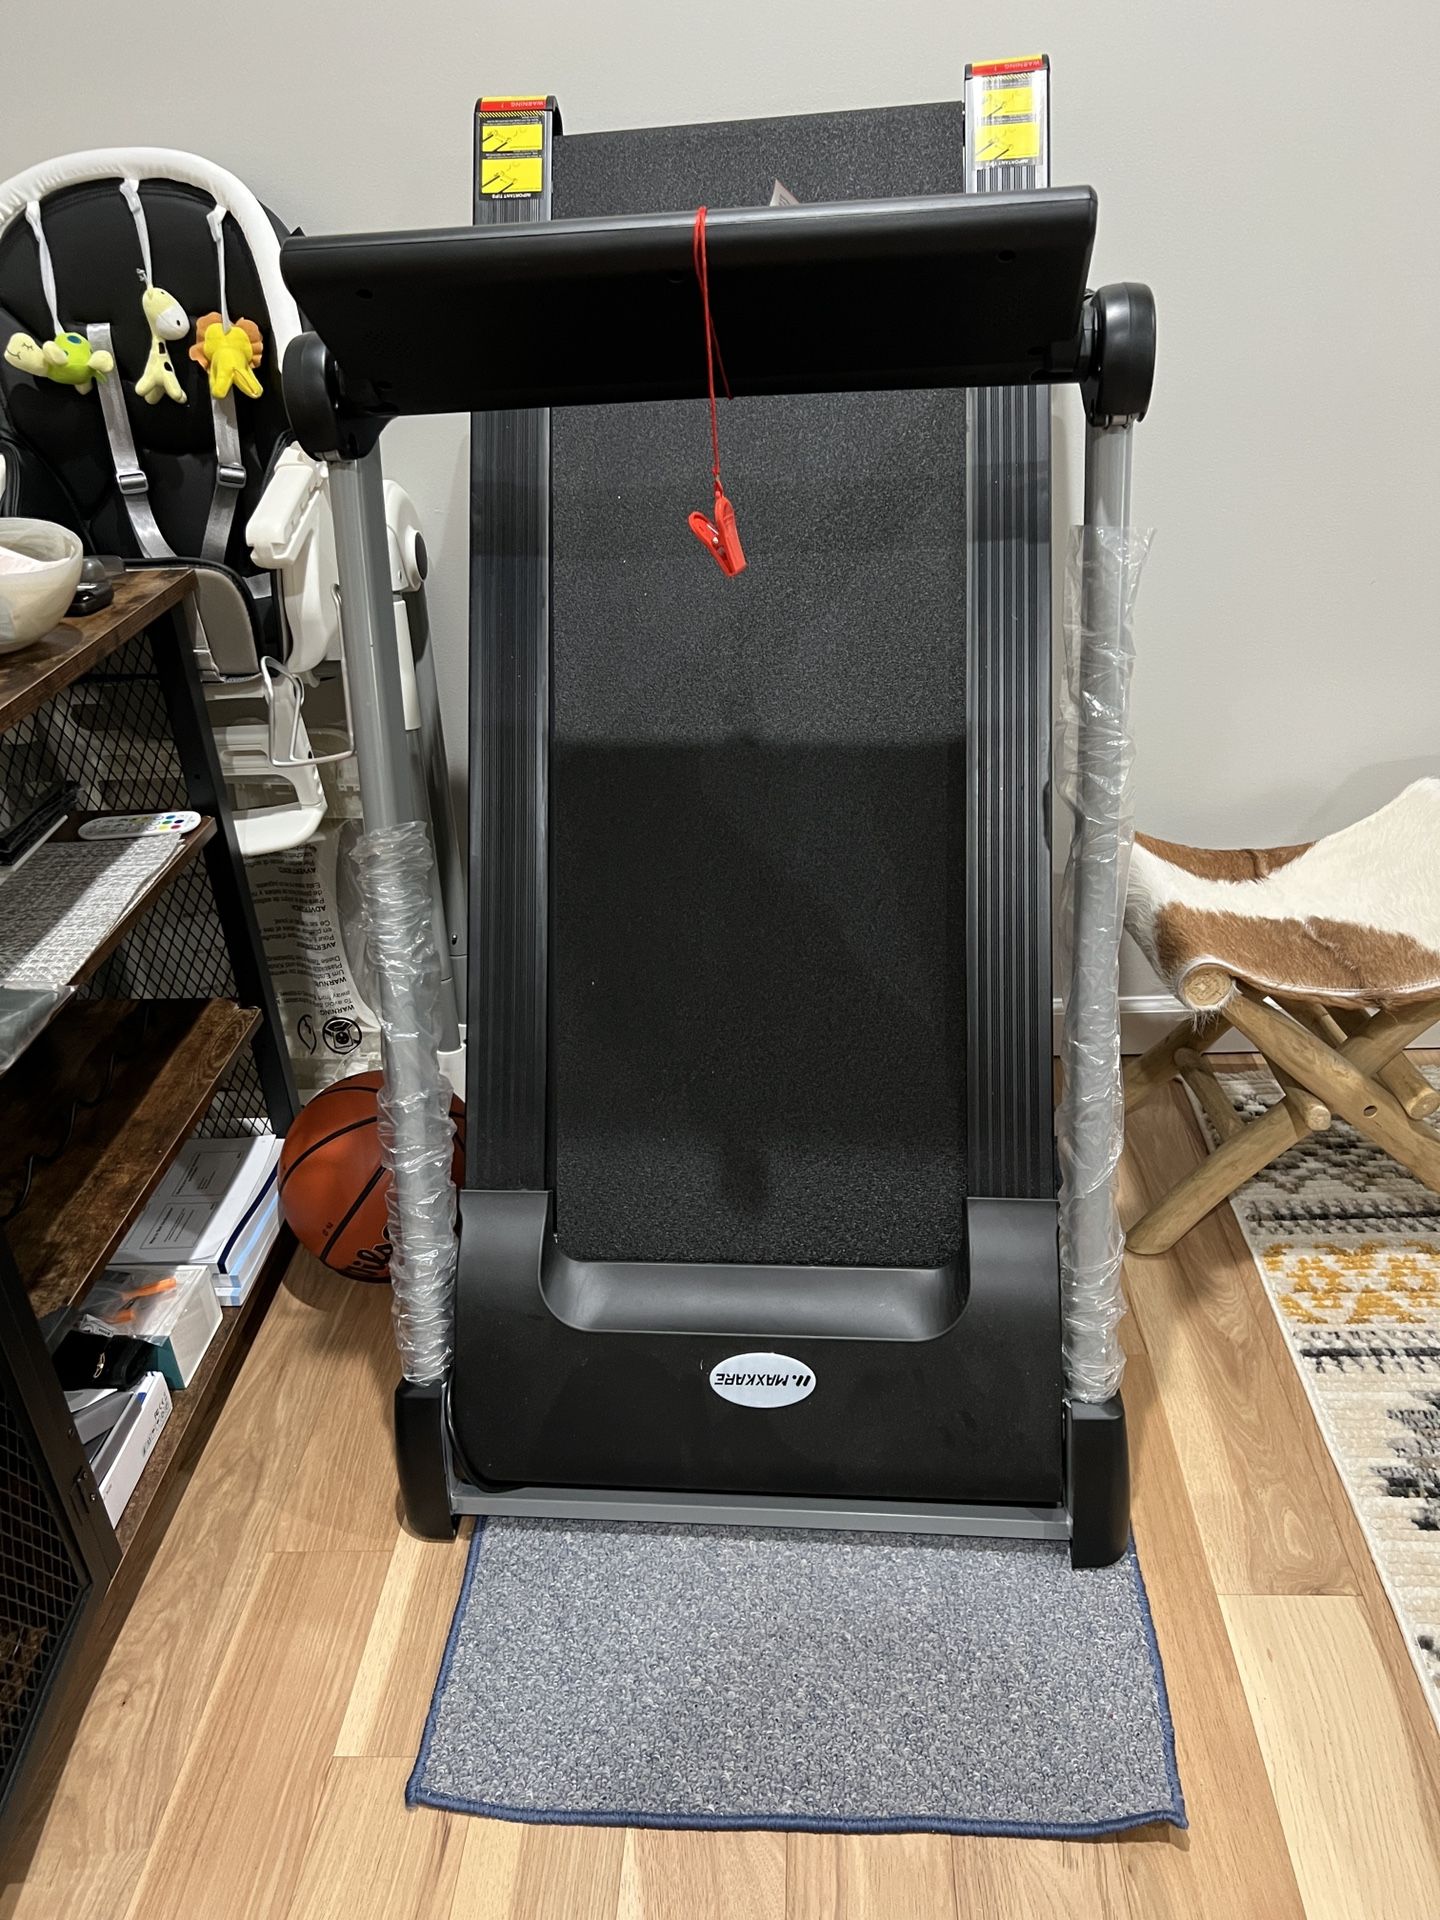 Maxcare Fold Up Treadmill